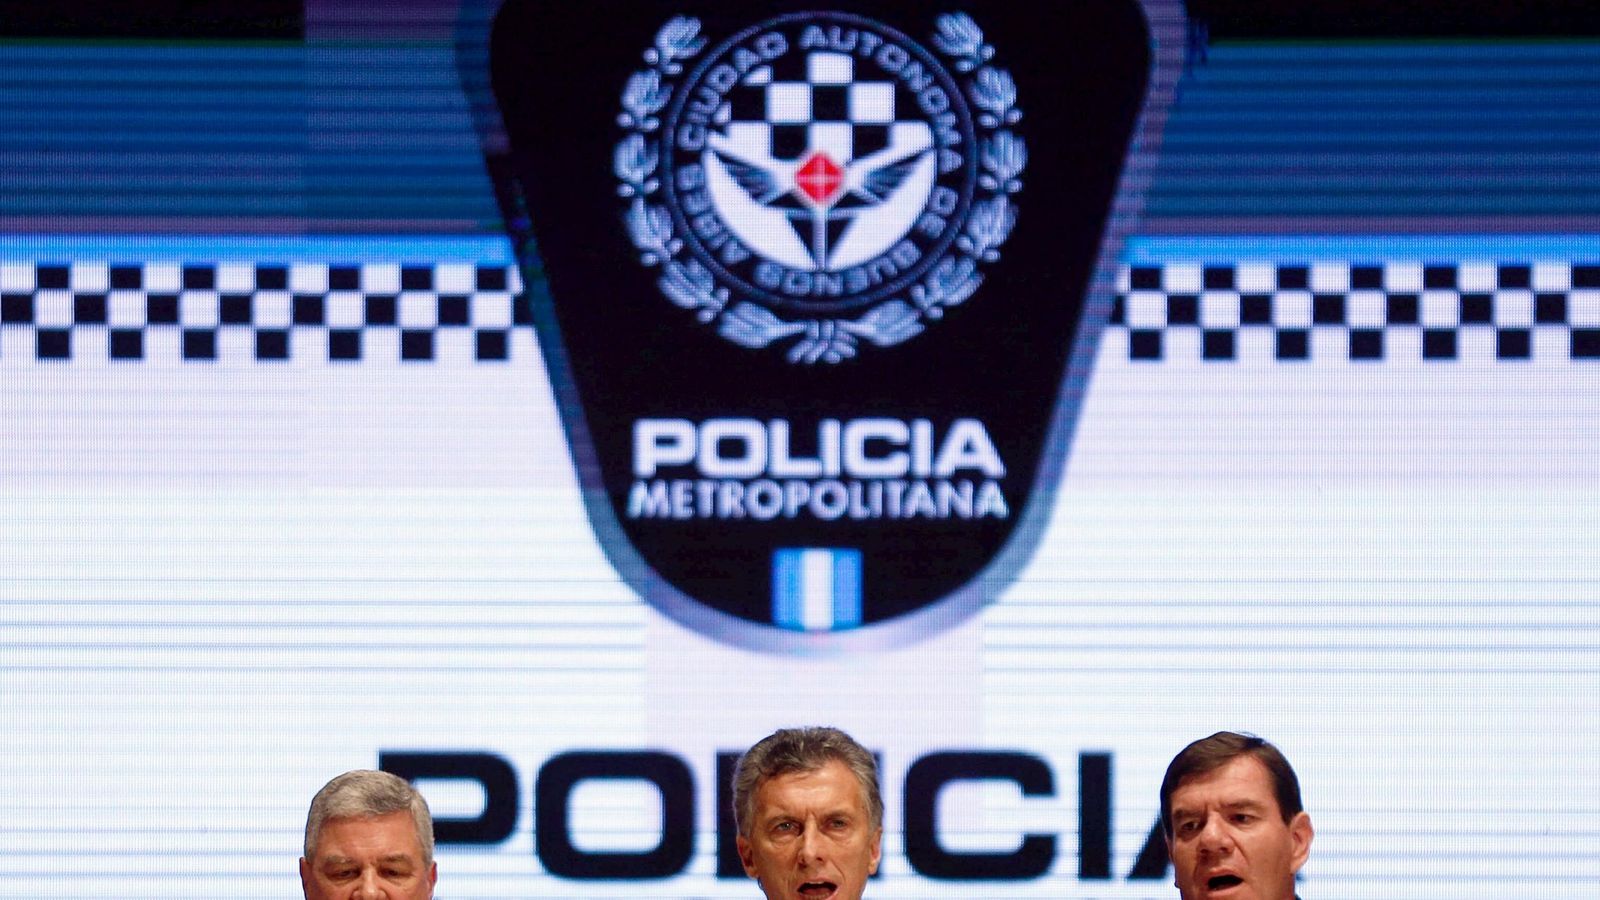 Foto: El presidente Mauricio Macri canta el himno nacional durante una ceremonia de la policía en Buenos Aires, el 28 de octubre de 2015 (Reuters)